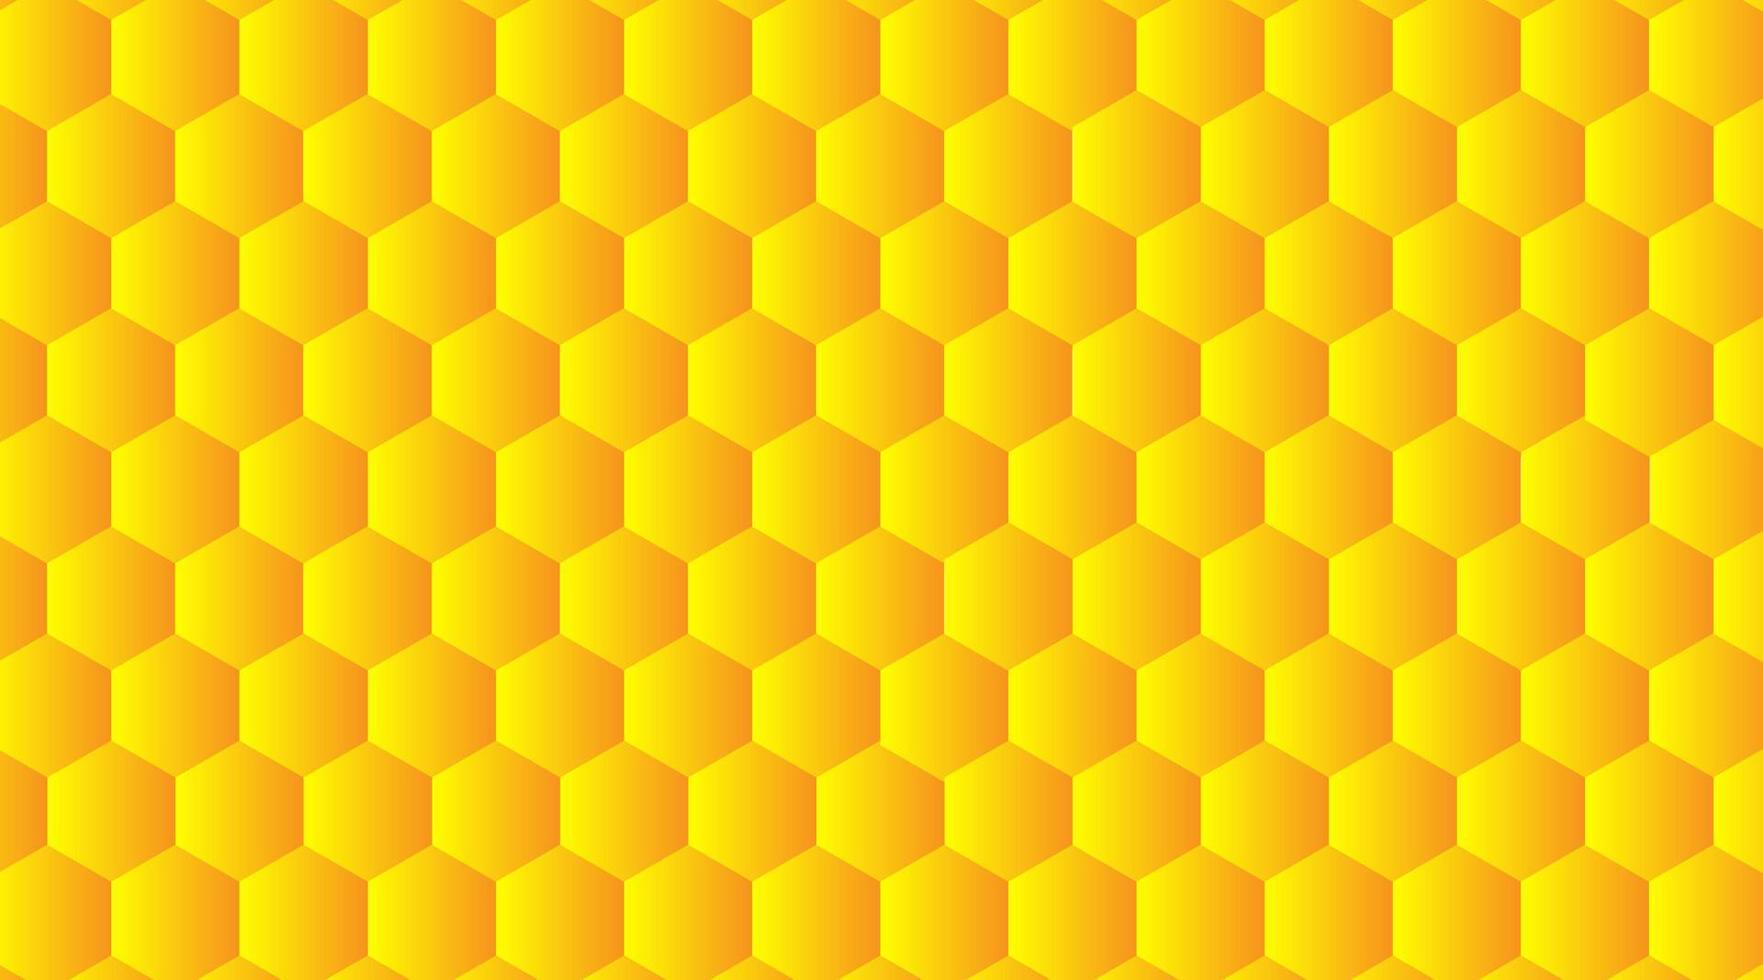 hexagone abstrait en relief. fond jaune en nid d'abeille, ombre et lumière. illustration vectorielle. vecteur